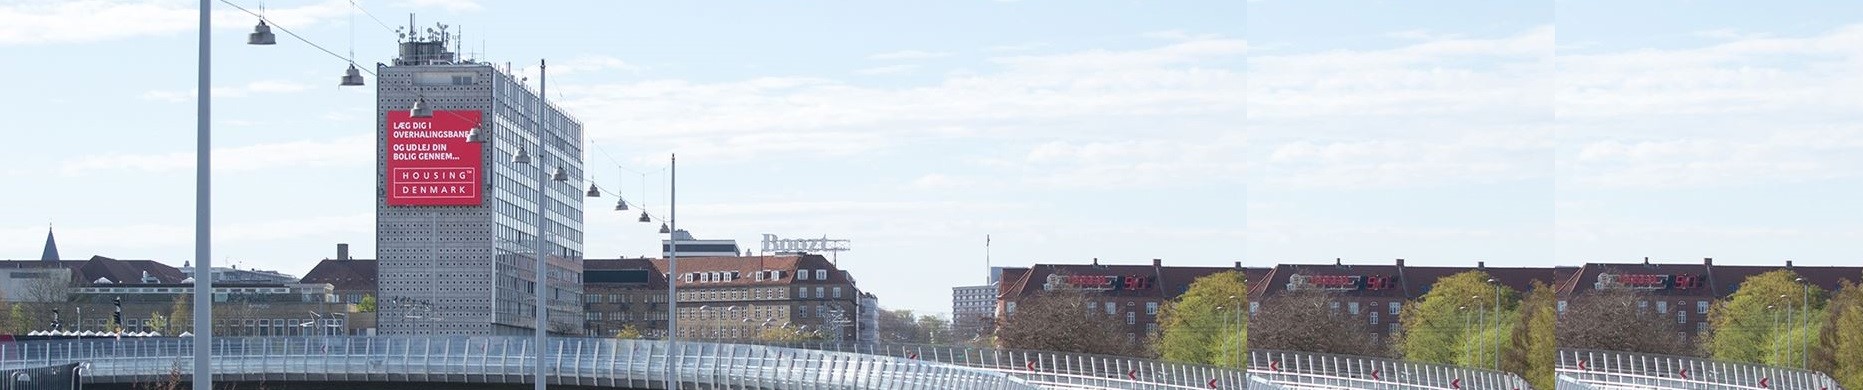 Housing Denmark på Lyngbymotorvejen